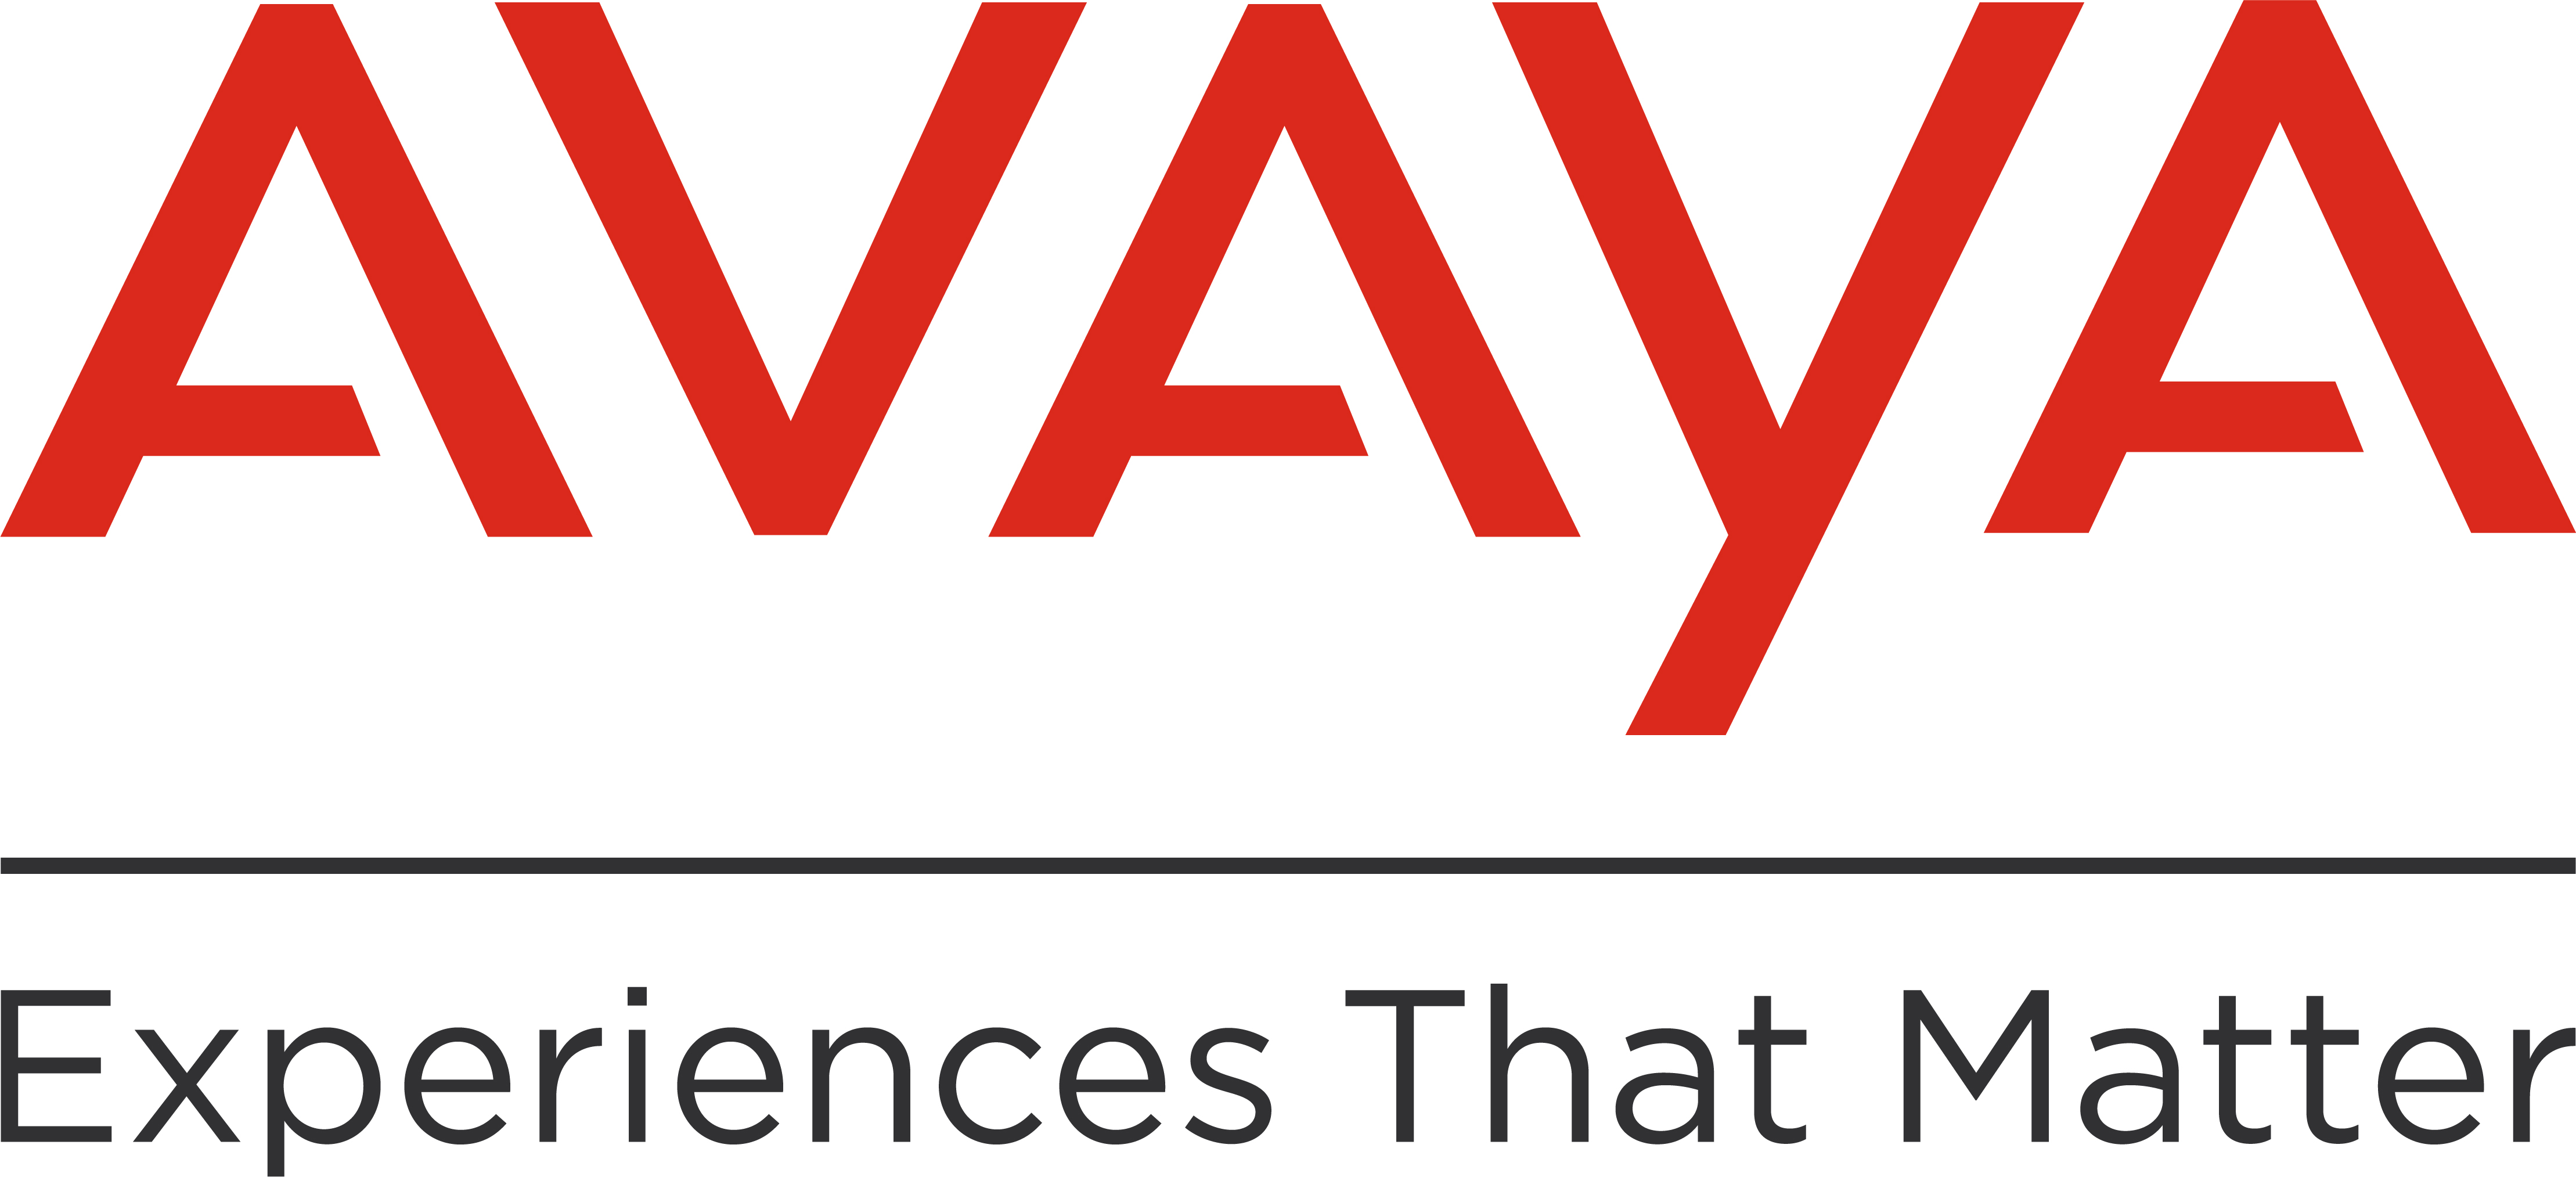 Avaya es reconocida nuevamente como súper empresa en la era del trabajo desde cualquier lugar